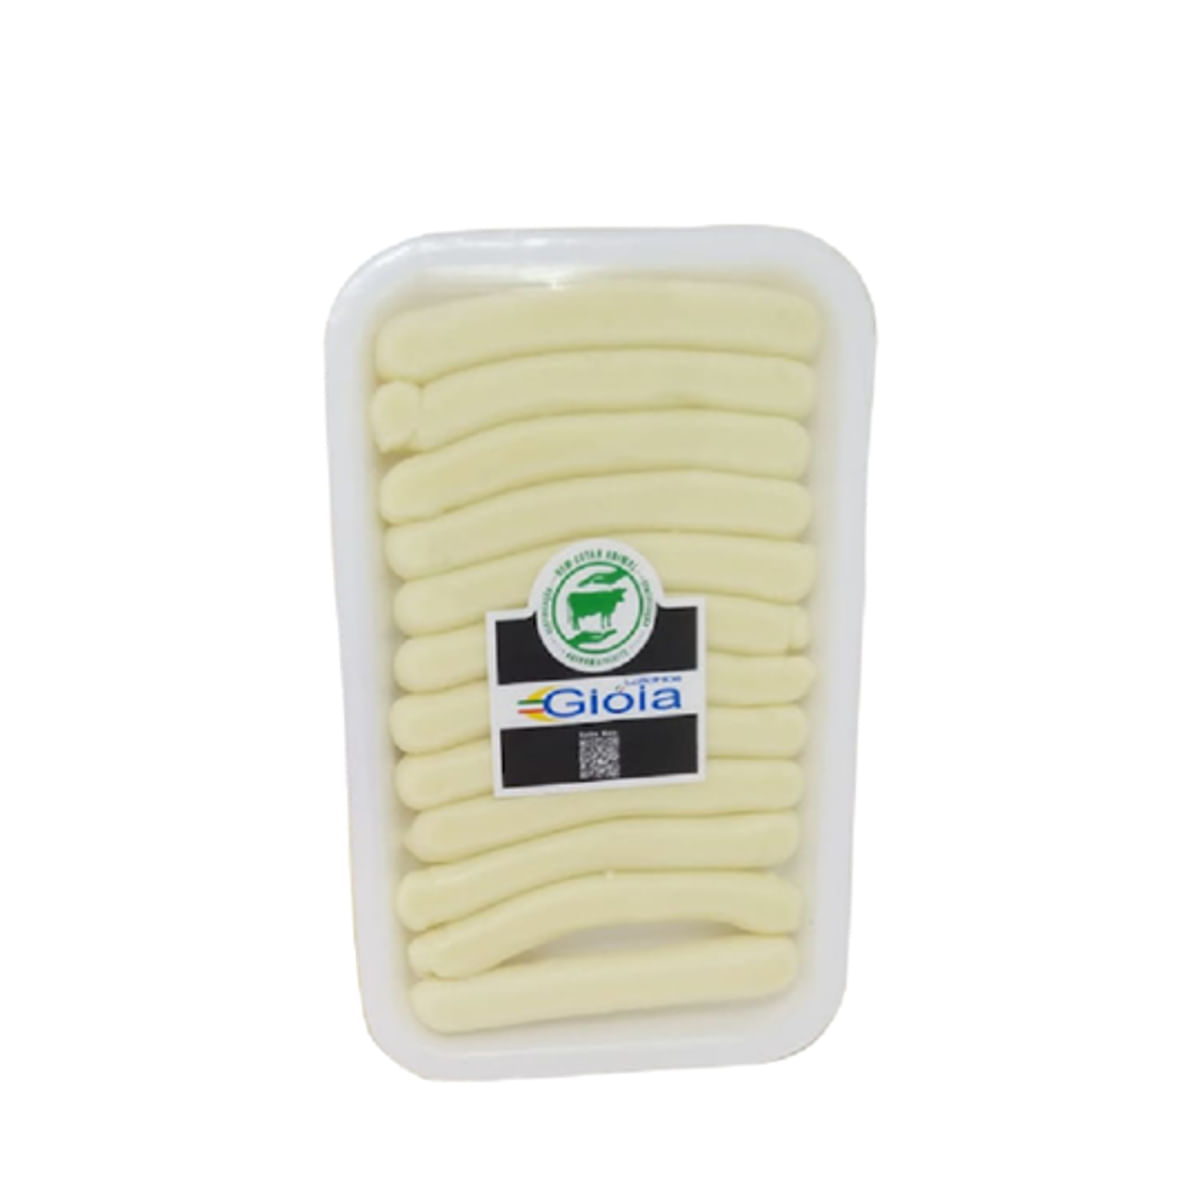 queijo-mussarela-palito-gioia-kg-1.jpg